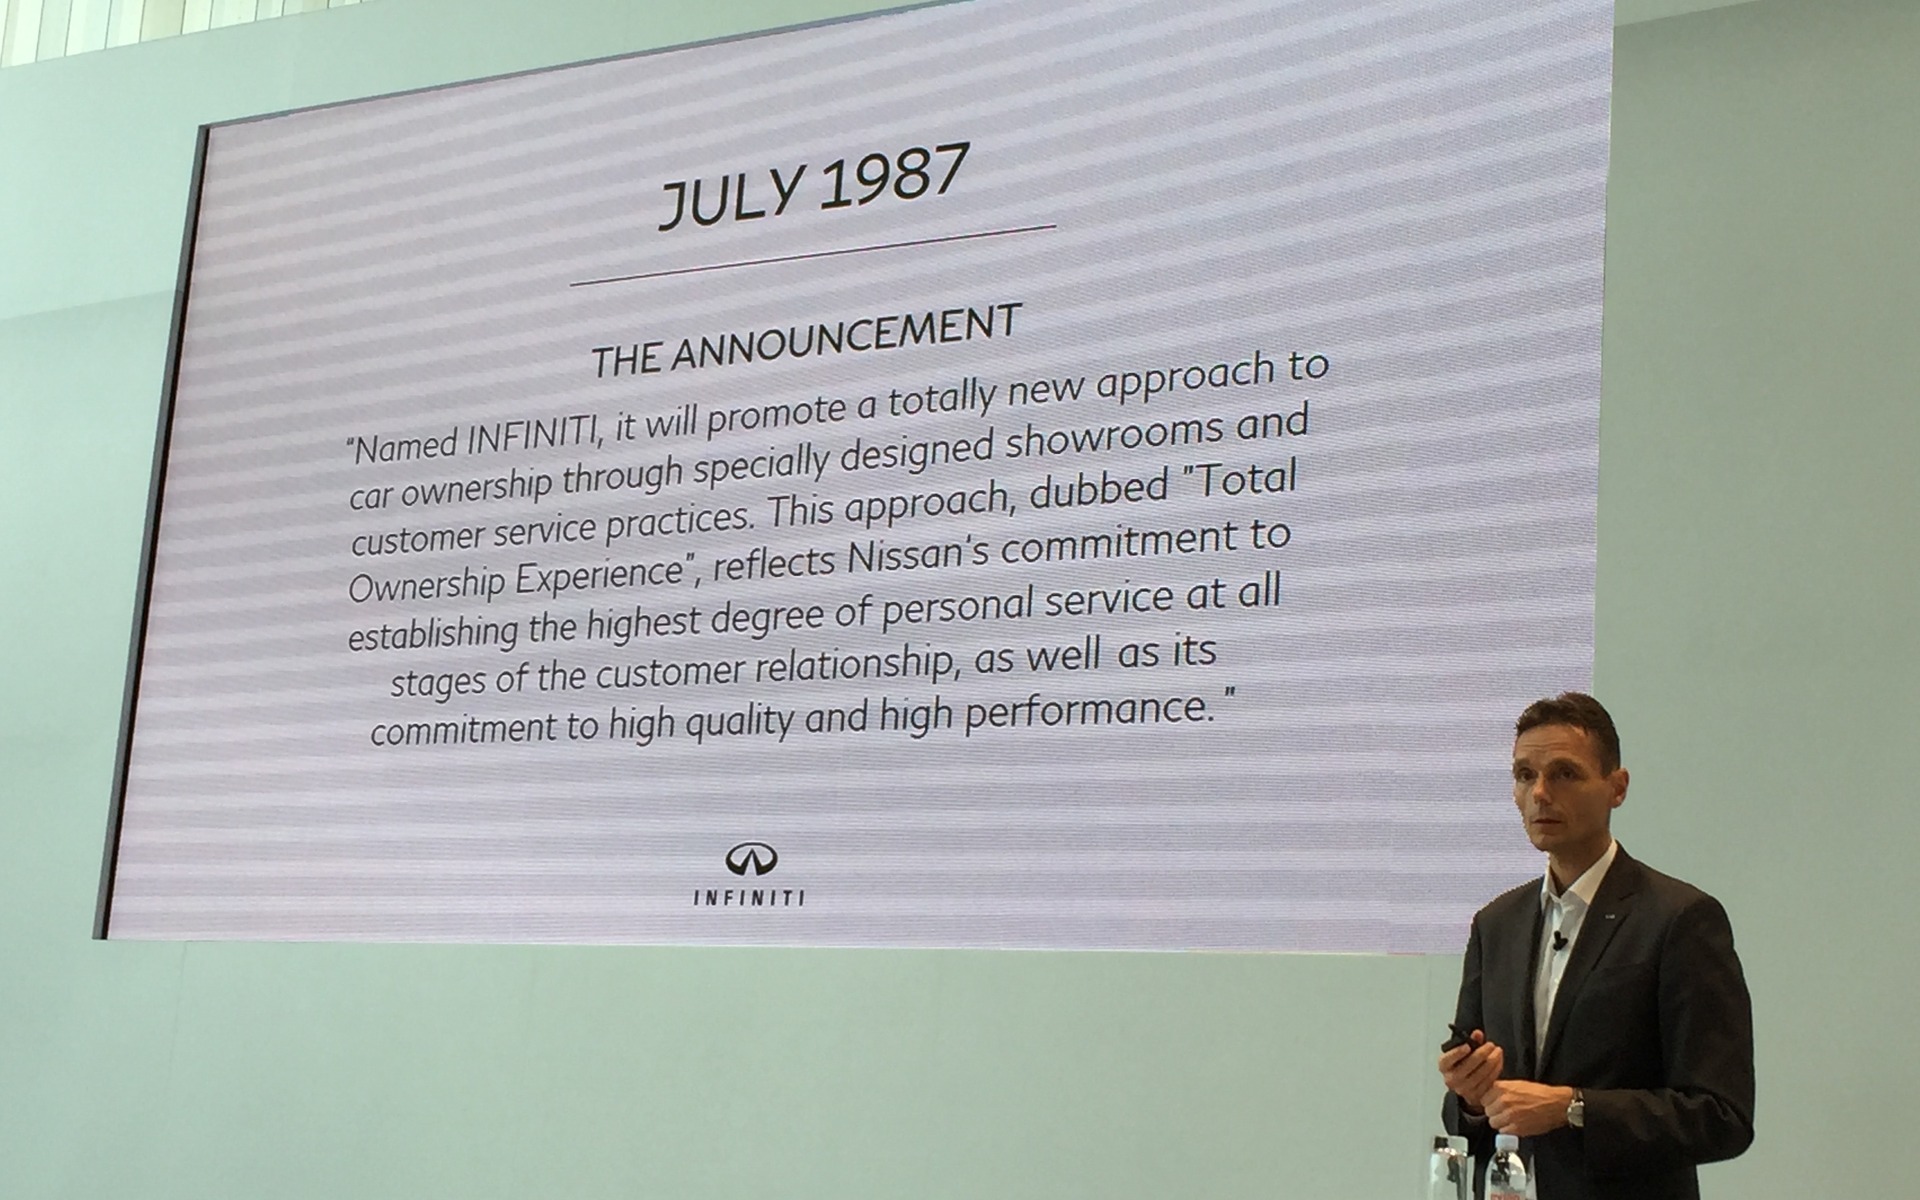 Le credo d'Infiniti lors du lancement de la marque en 1987